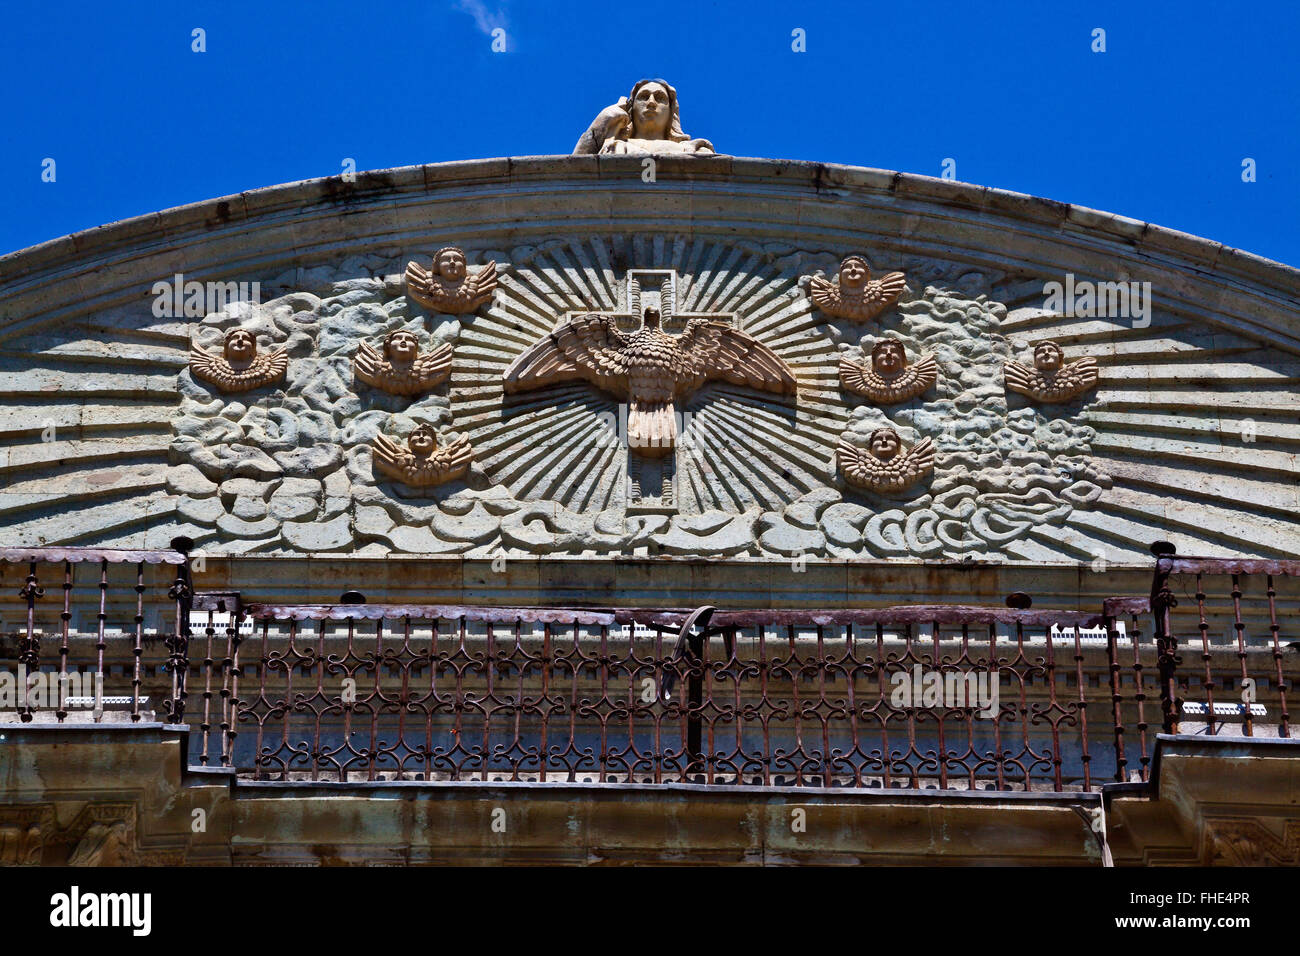 Haut de la CATHÉDRALE NOTRE DAME DE L'Assomption a été construite en 1535 et est situé dans le Zocalo - Oaxaca, Mexique Banque D'Images